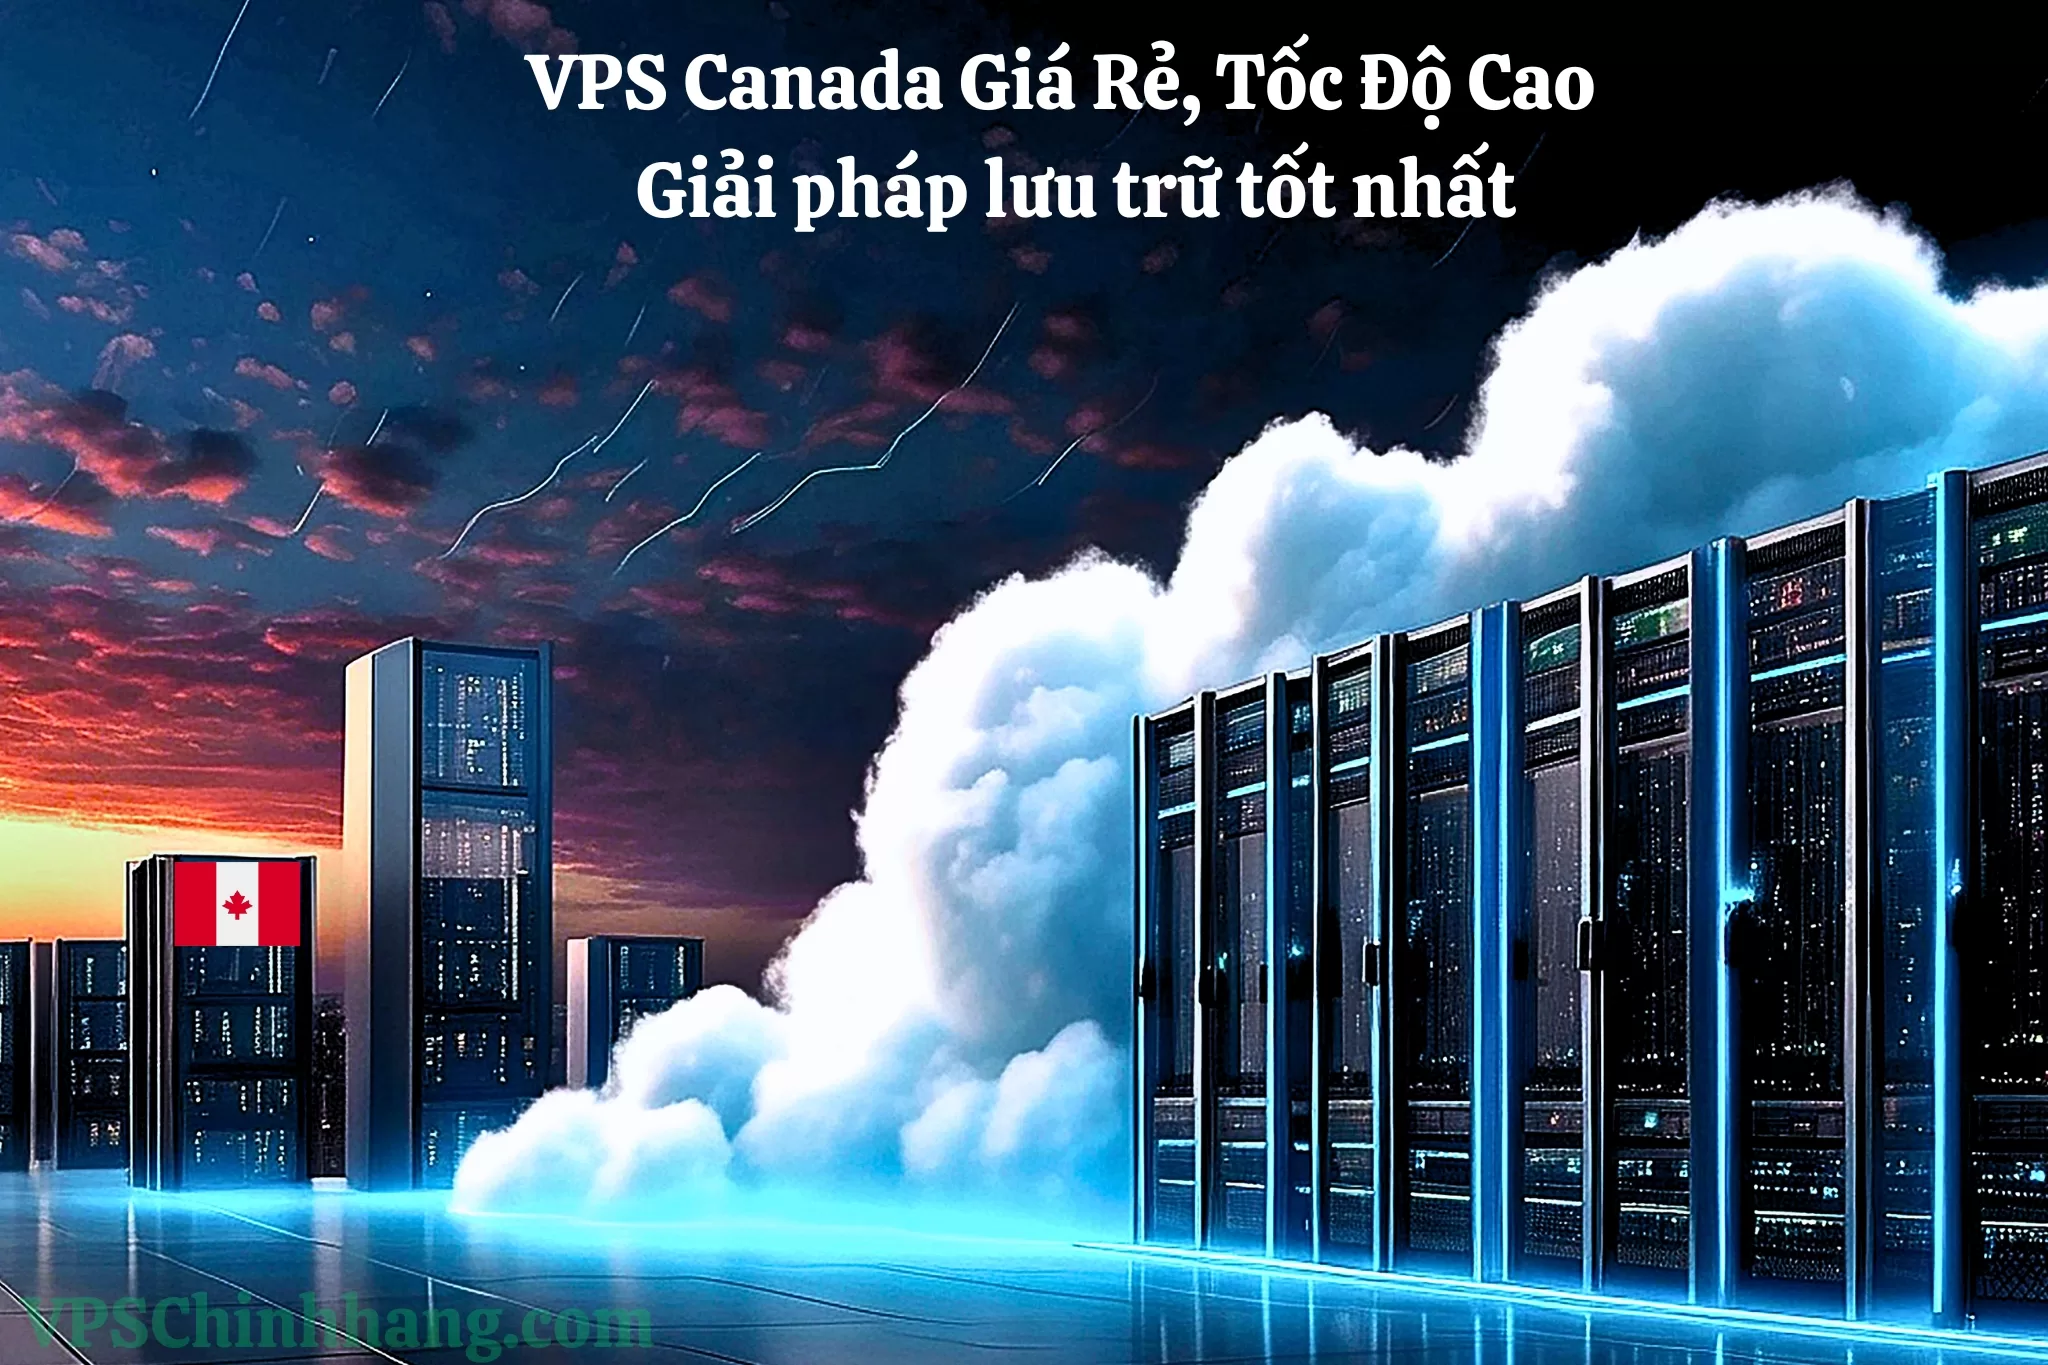 VPS Canada Giá Rẻ, Tốc Độ Cao – Giải pháp lưu trữ tốt nhất